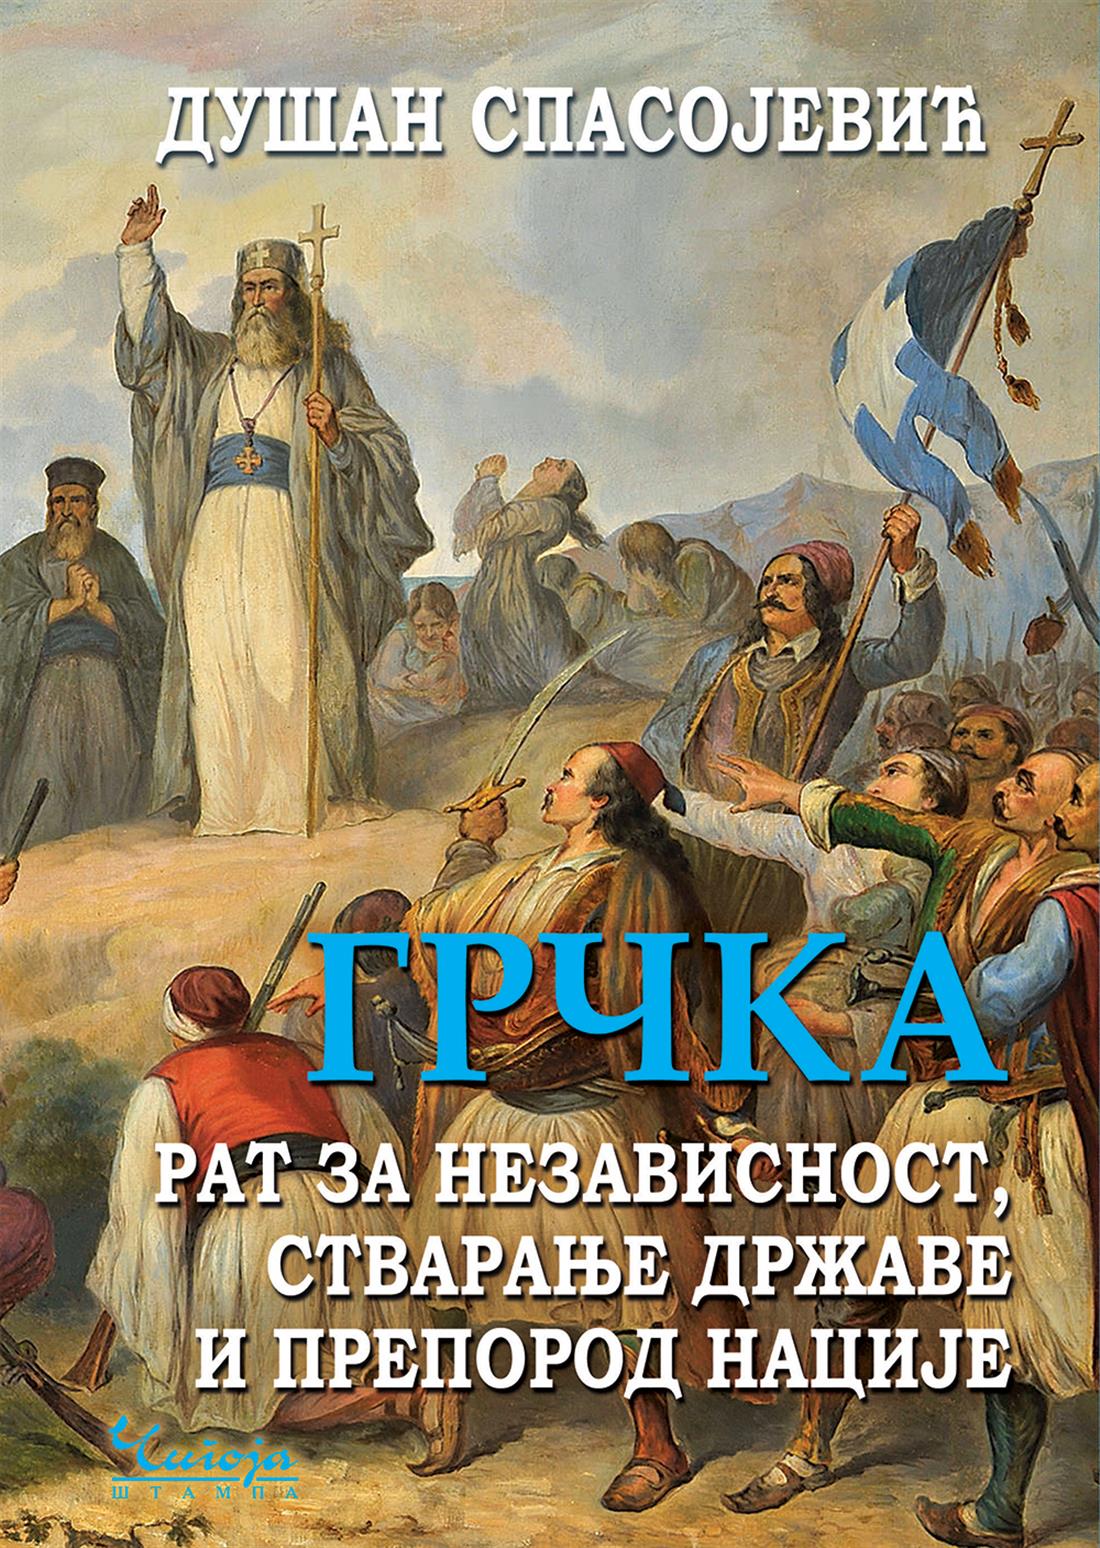 Σερβία - πρώτο βιβλίο - σύγχρονη ελληνική Ιστορία